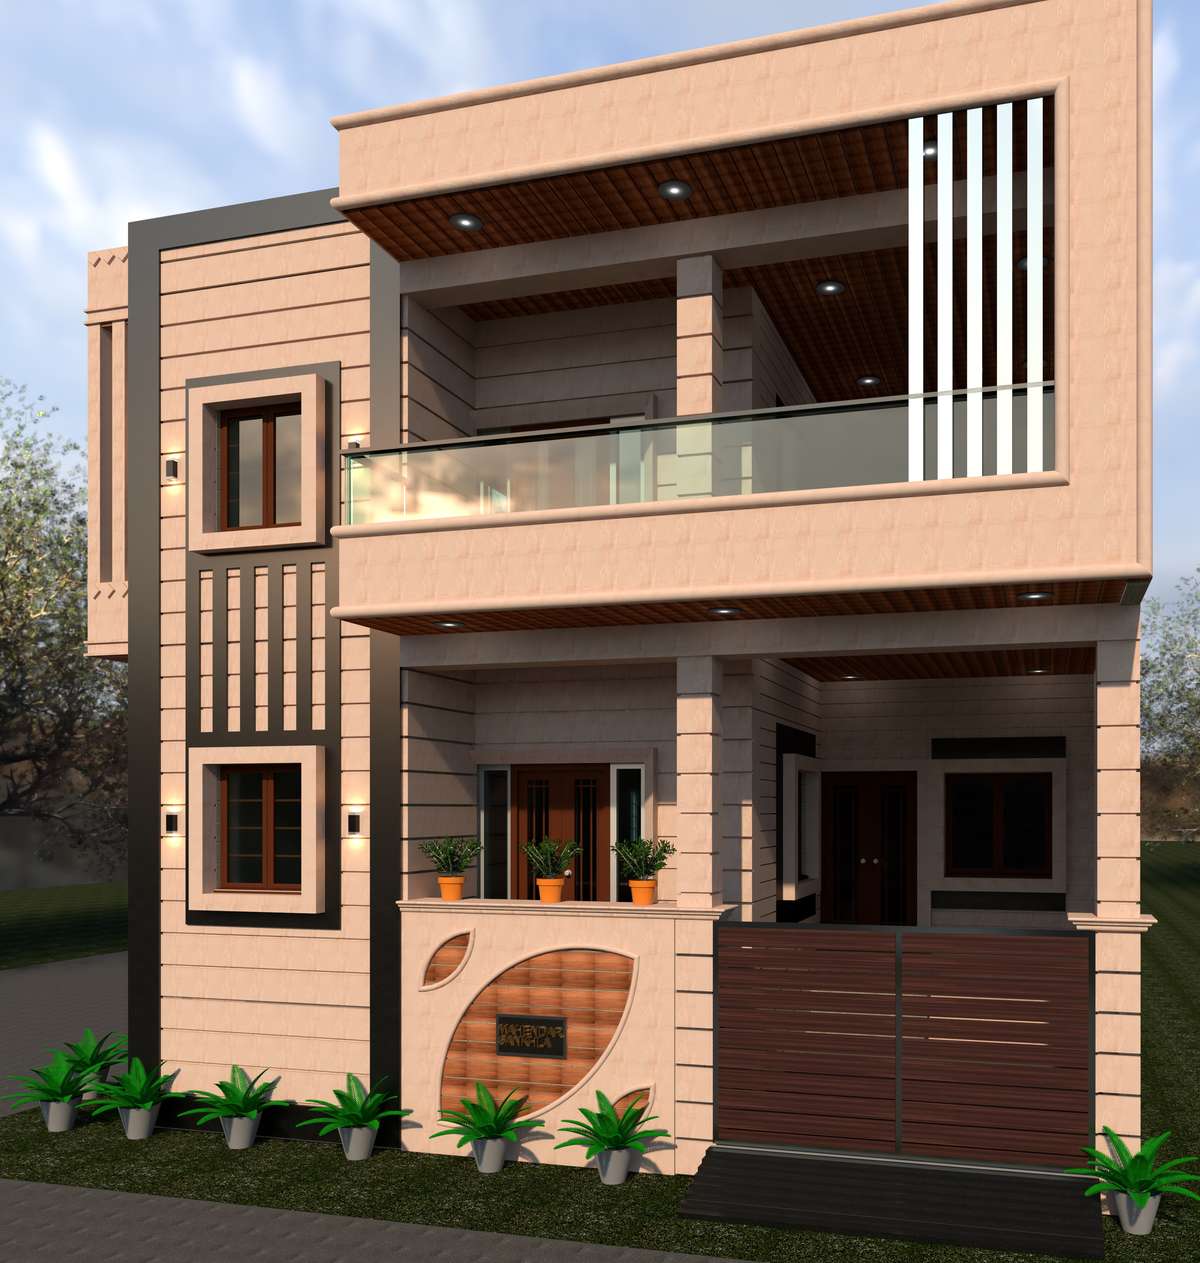 Designs by Civil Engineer Abhishek K, Jodhpur | Kolo